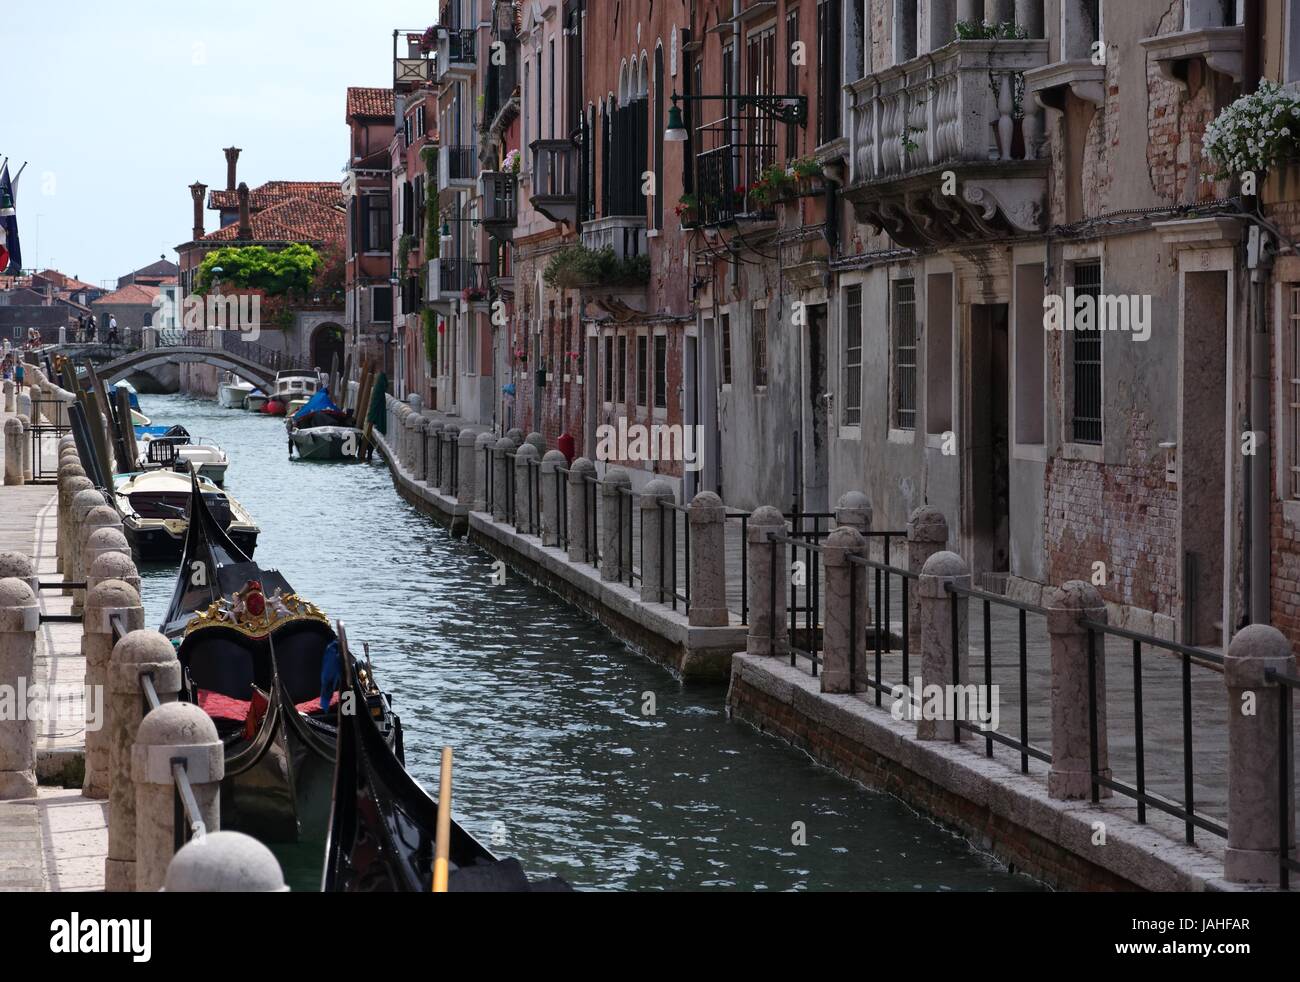 Kanal in Venedig mit kleinen Gondeln Stock Photo